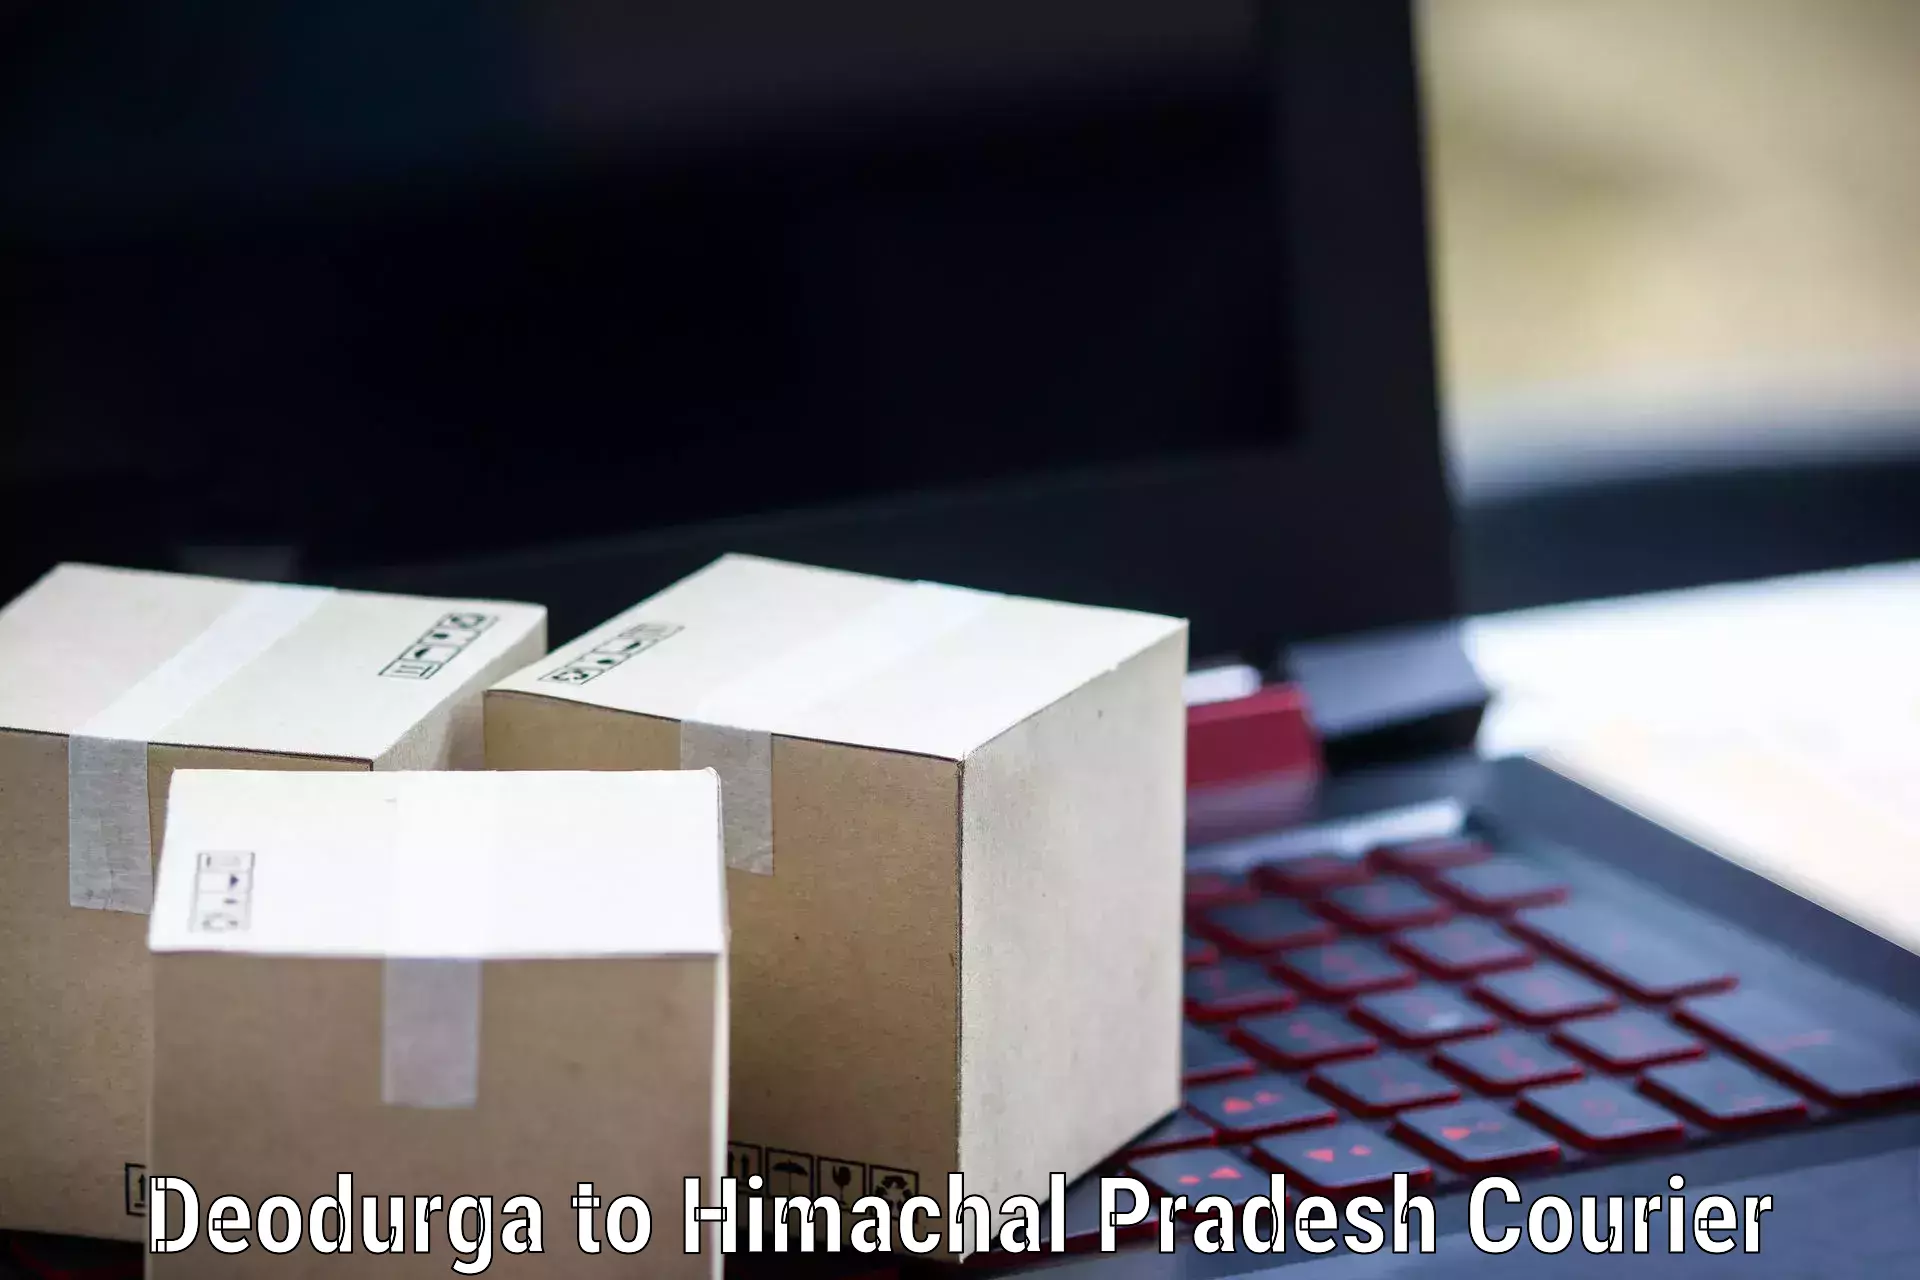 Pharmaceutical courier Deodurga to Rampur Bushahr